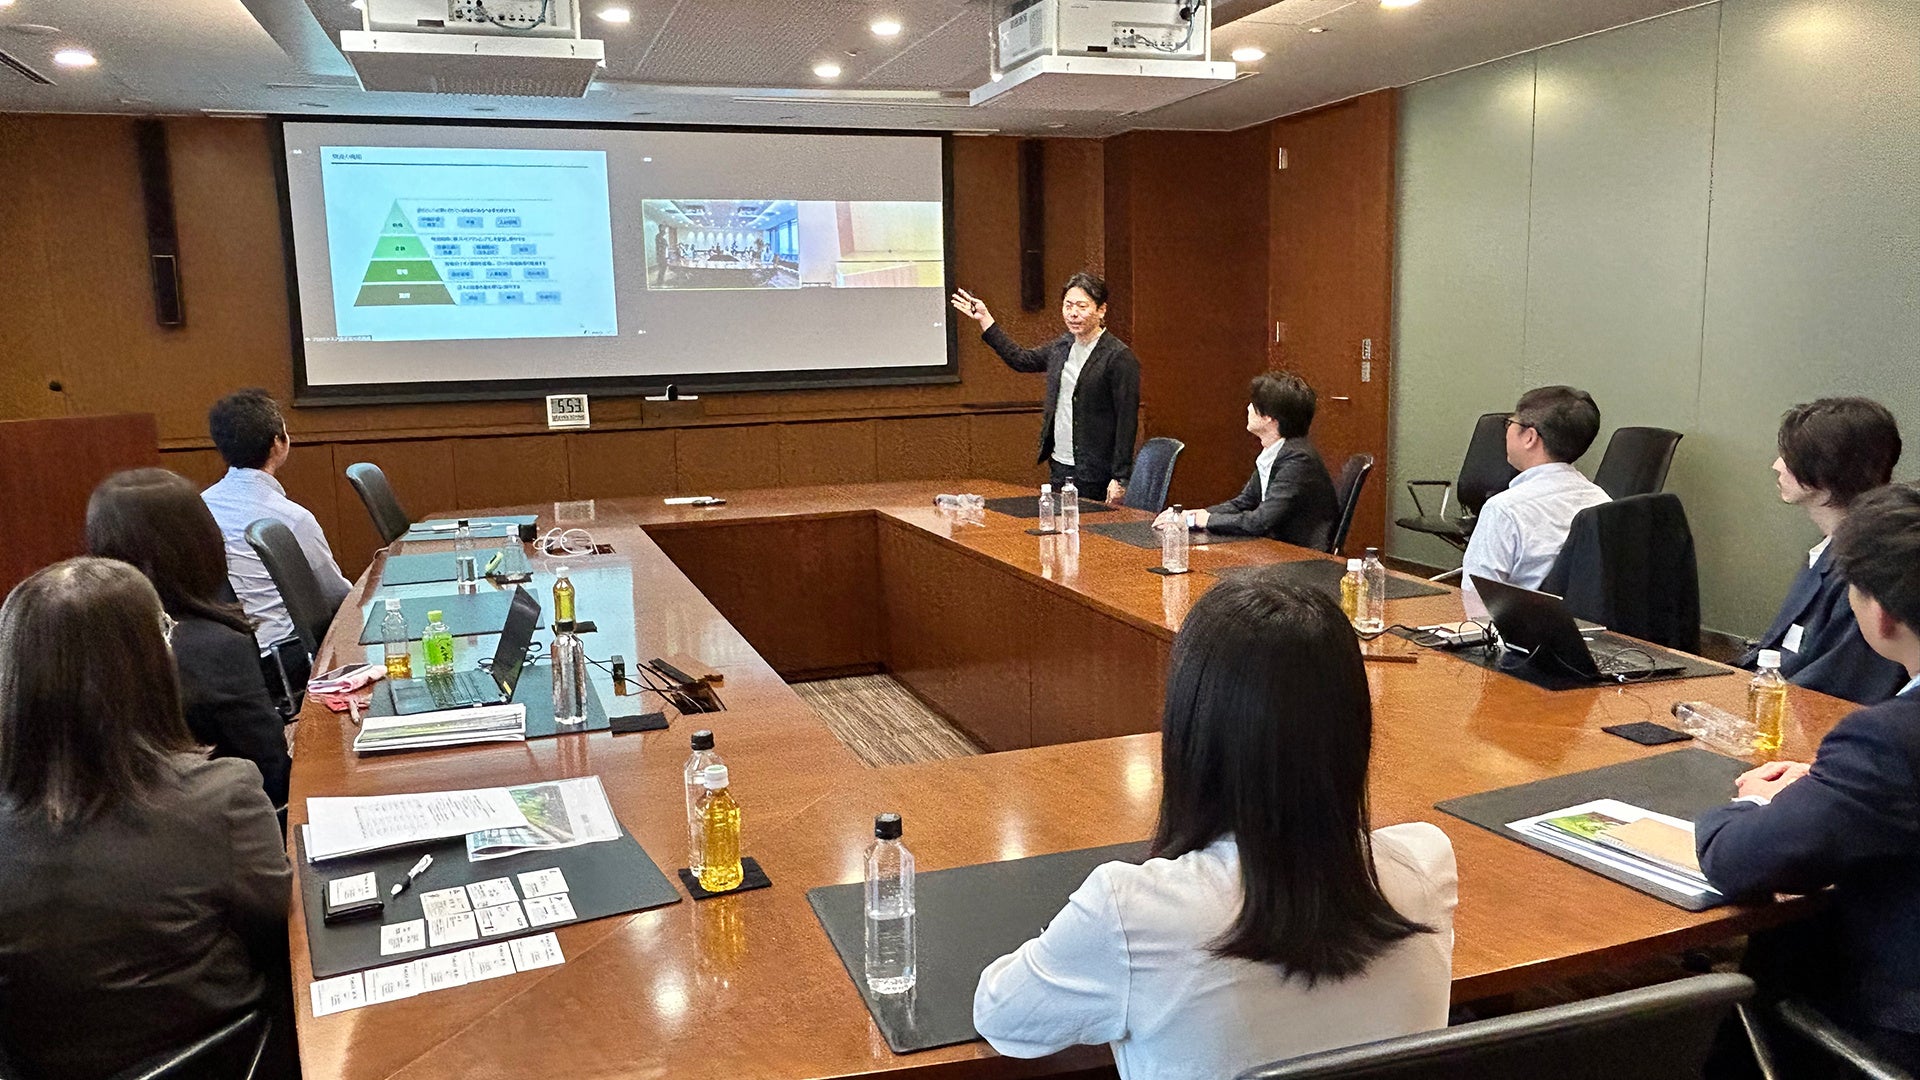 プロロジス、物流業界の次世代リーダー育成を目的に東京と大阪で「プロロジスアカデミー」を開講